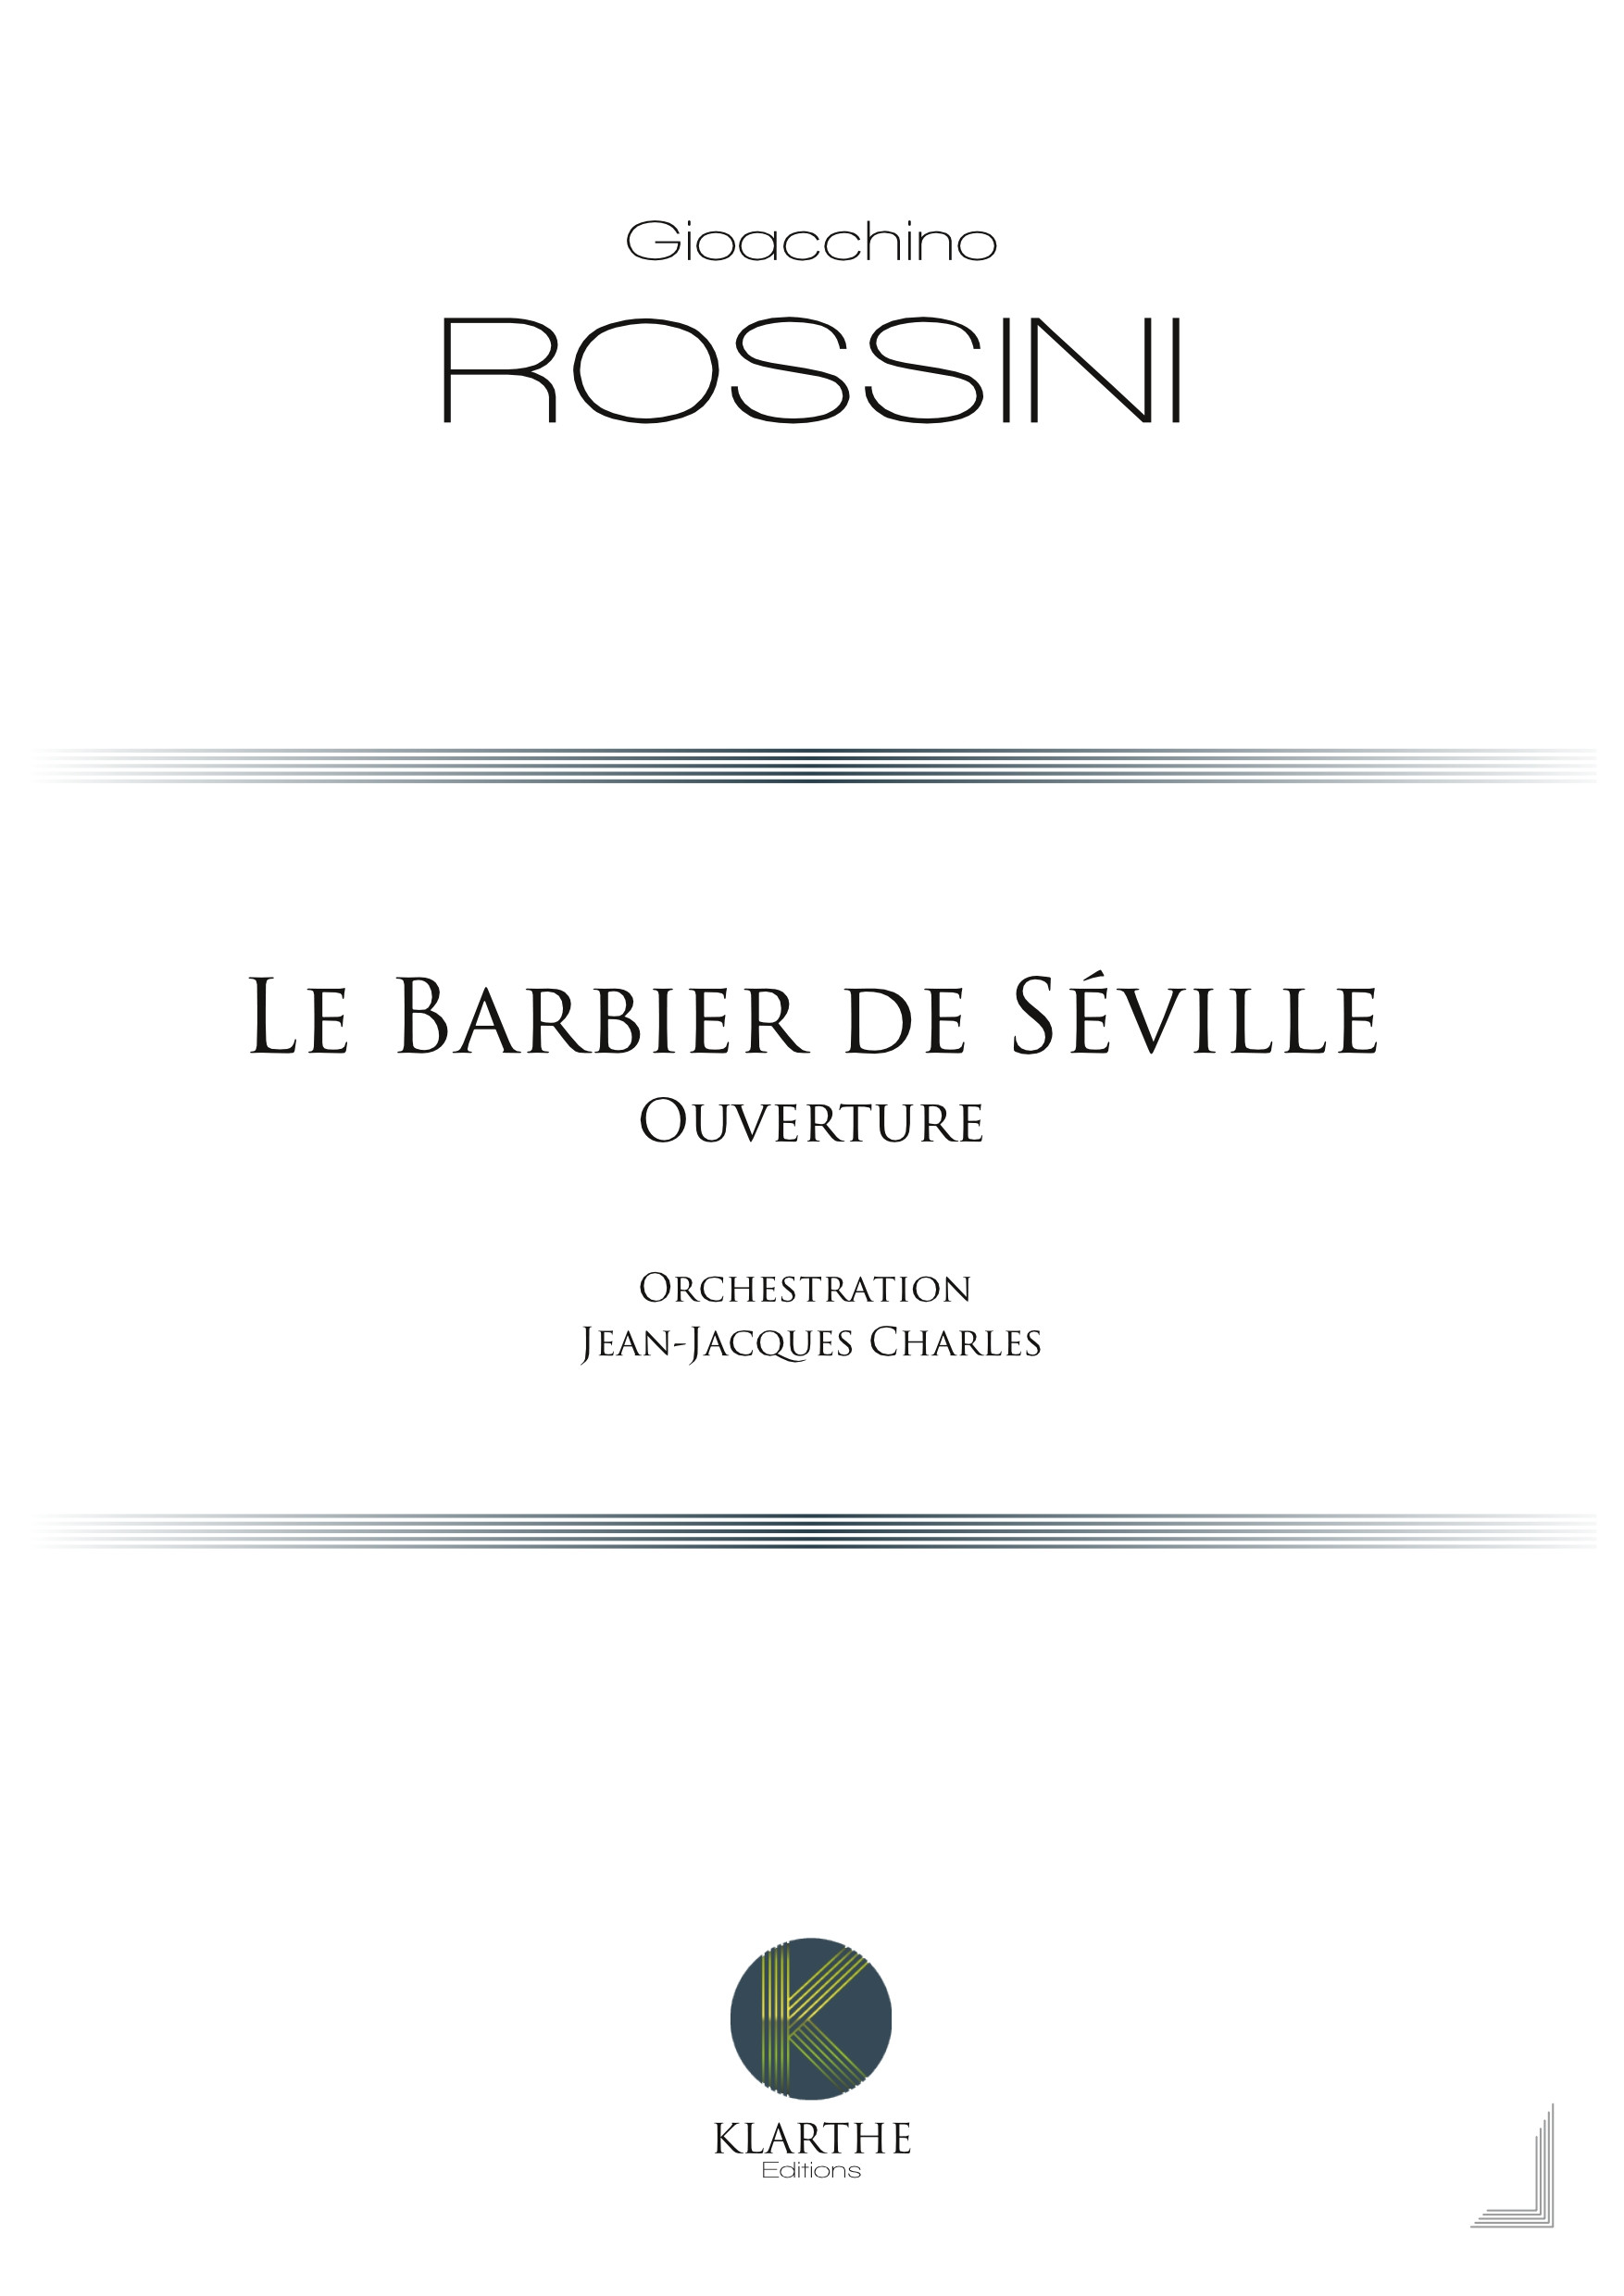 Ouverture du Barbier de Séville (ROSSINI GIOACHINO)